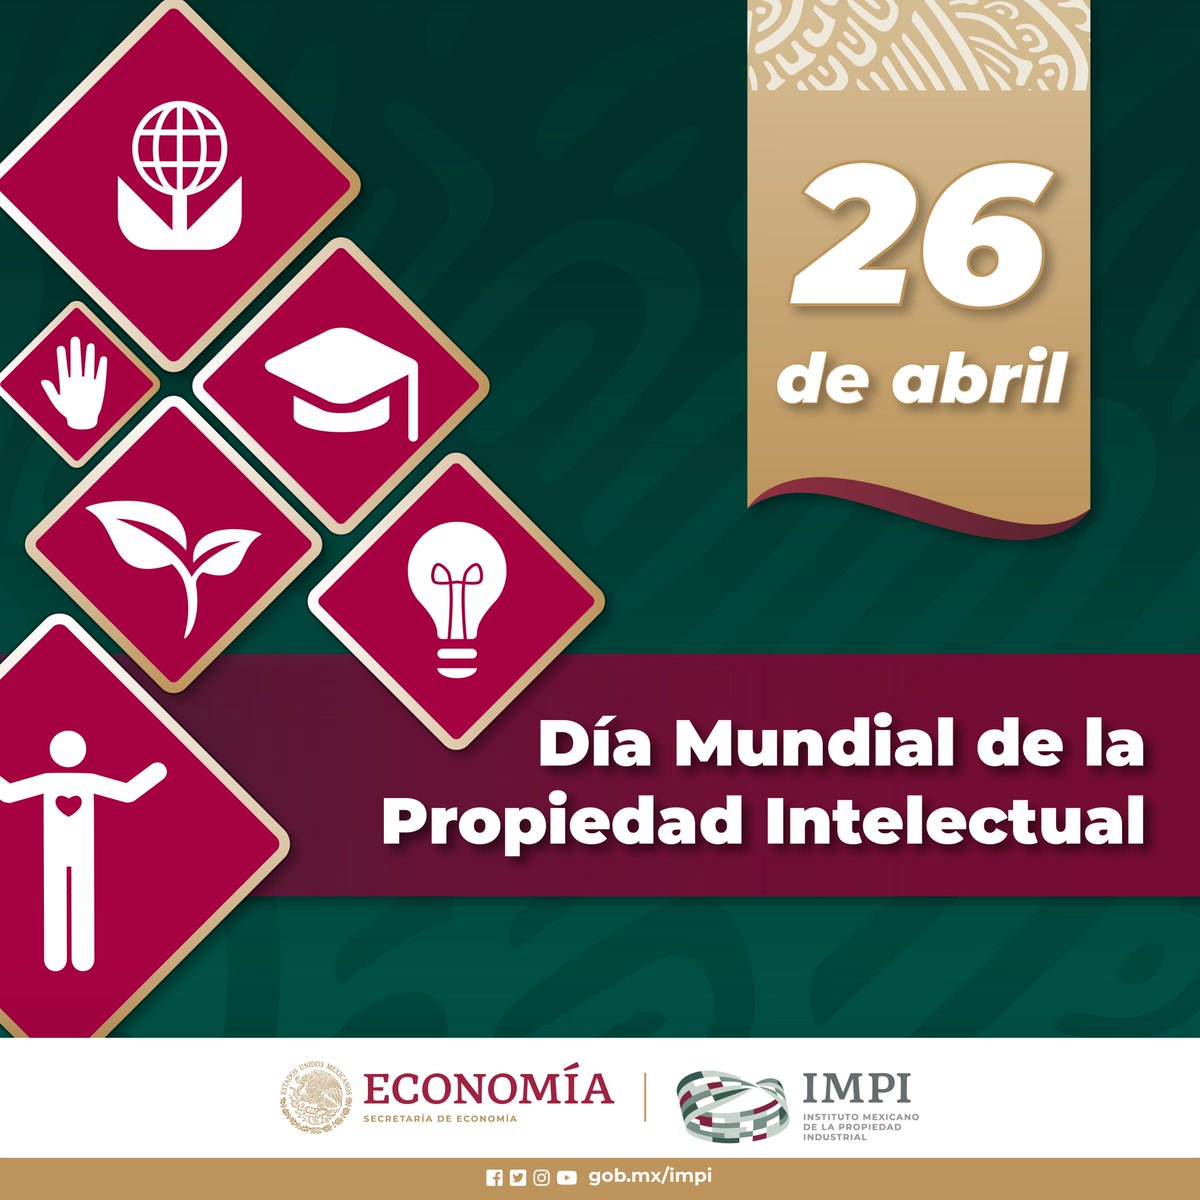 En el #DíaMundialDeLaPI es importante recordar que la Propiedad Intelectual es indispensable para impulsar el desarrollo sostenible, a través de la innovación se impacta de manera positiva a nivel social, económico y ambiental.